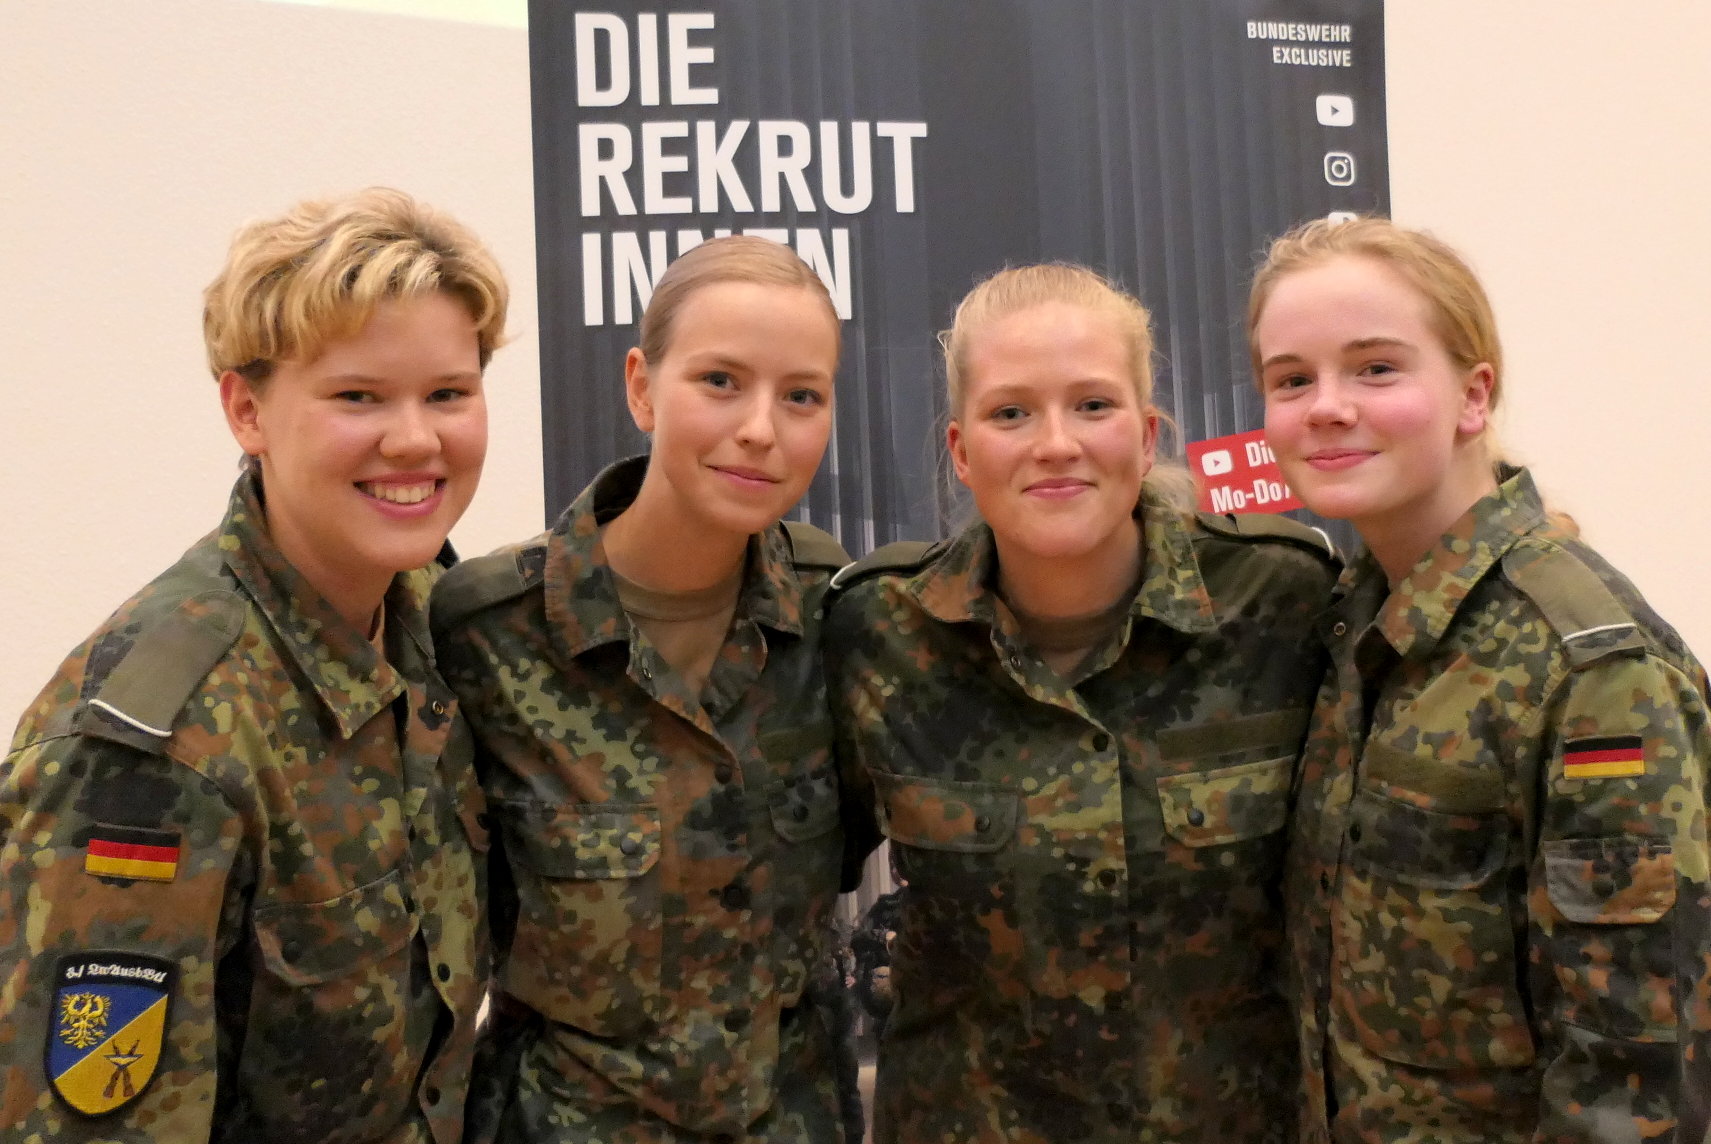 DIE REKRUTINNEN Bundeswehr Exclusive.